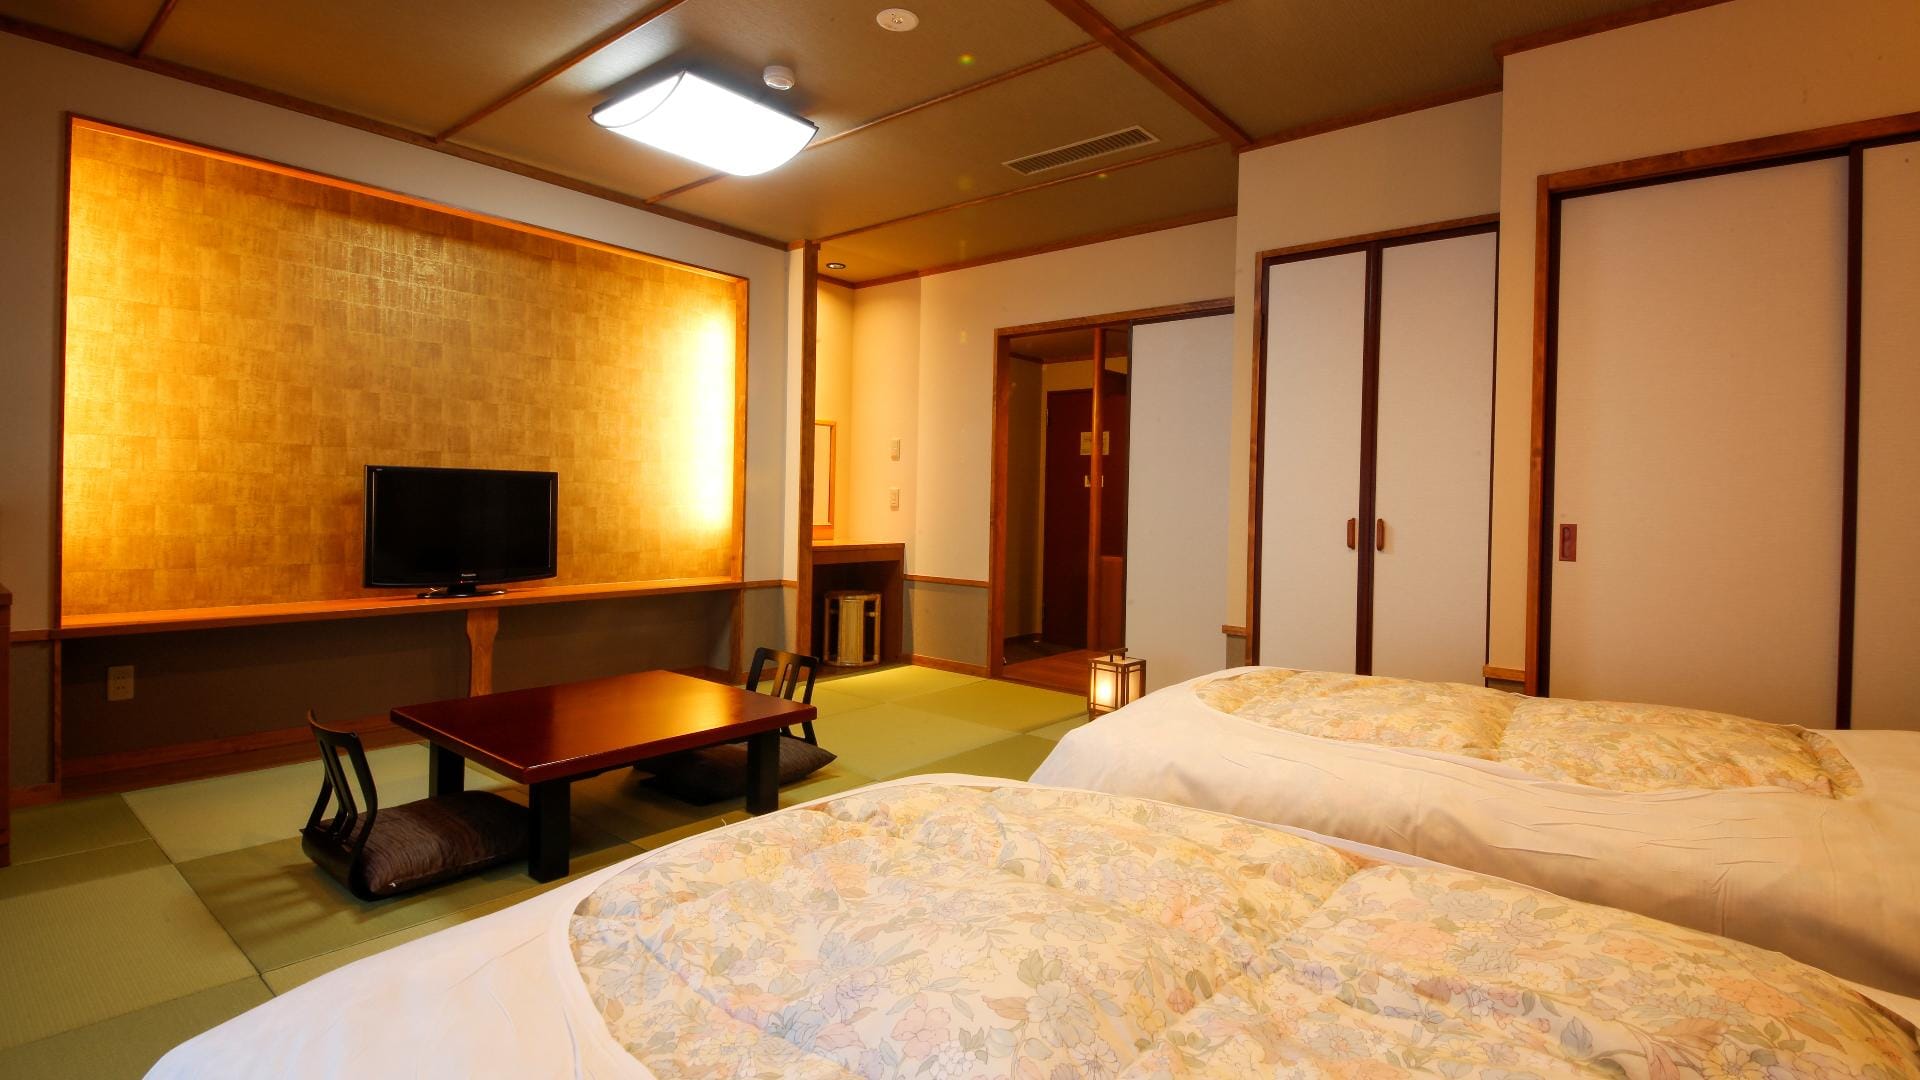 ■ ห้องพักสไตล์ญี่ปุ่นและตะวันตกในมุมต่างๆ